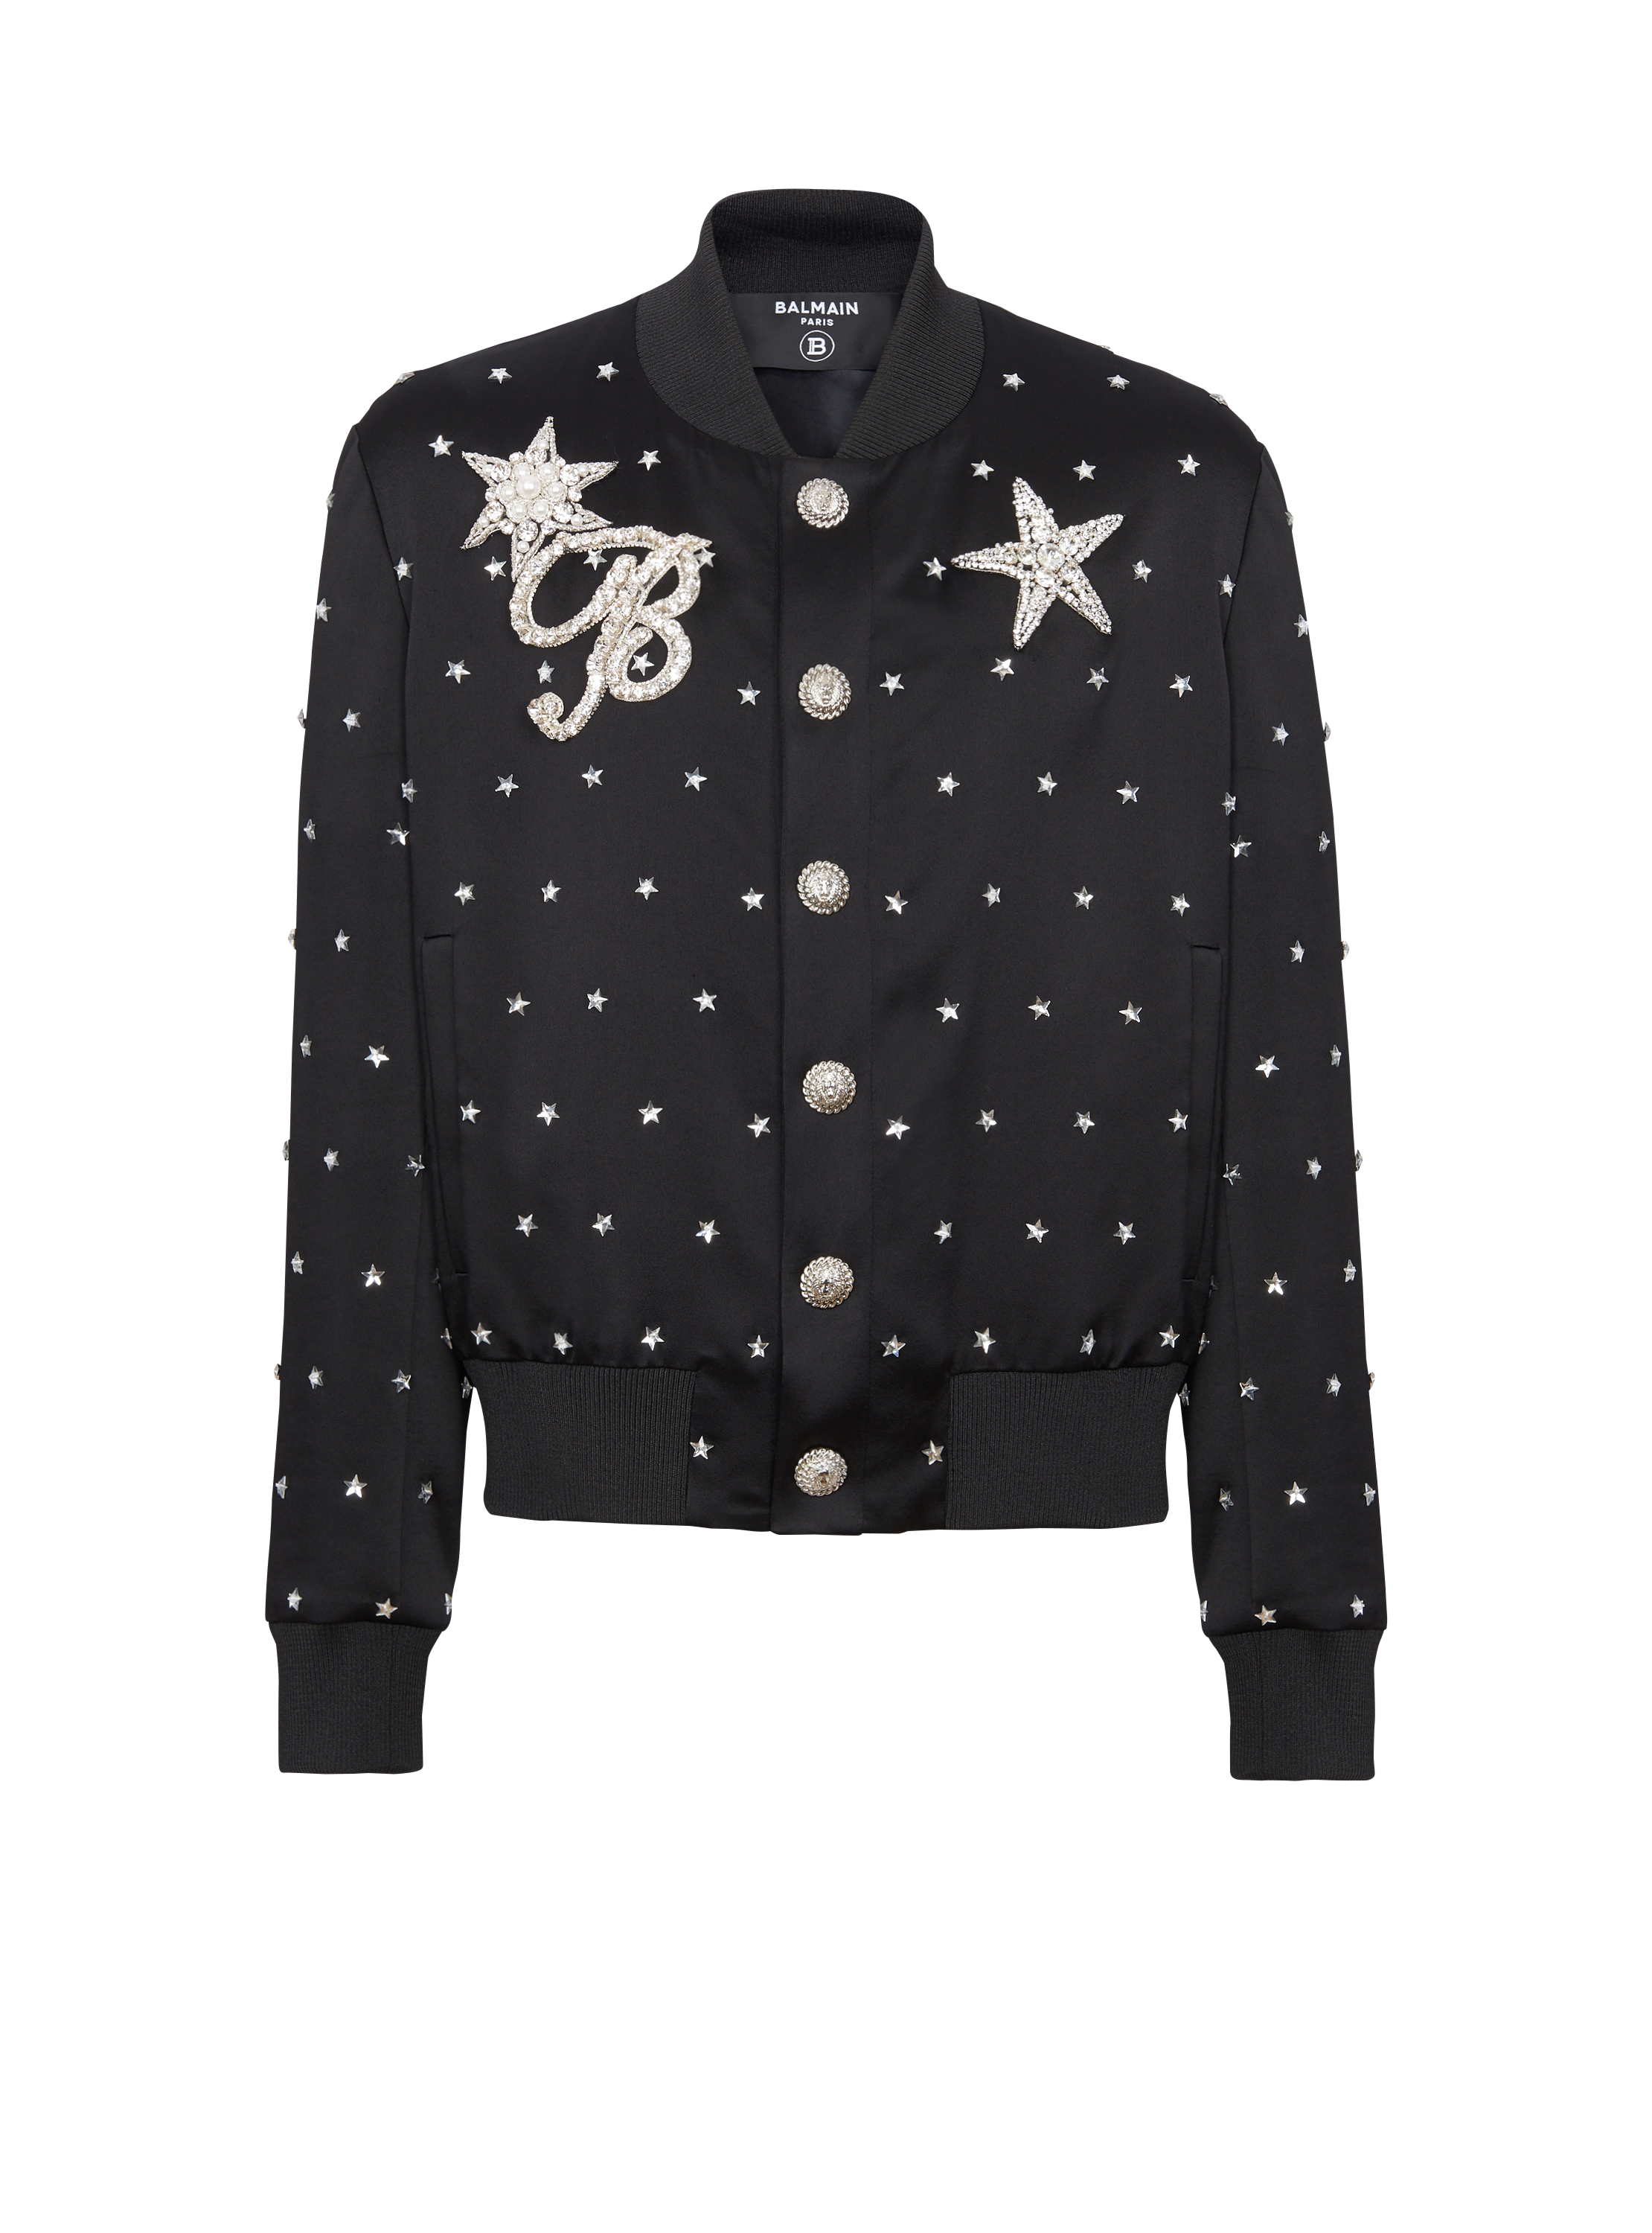 Stars embroidered bomber jacket, black, hi-res